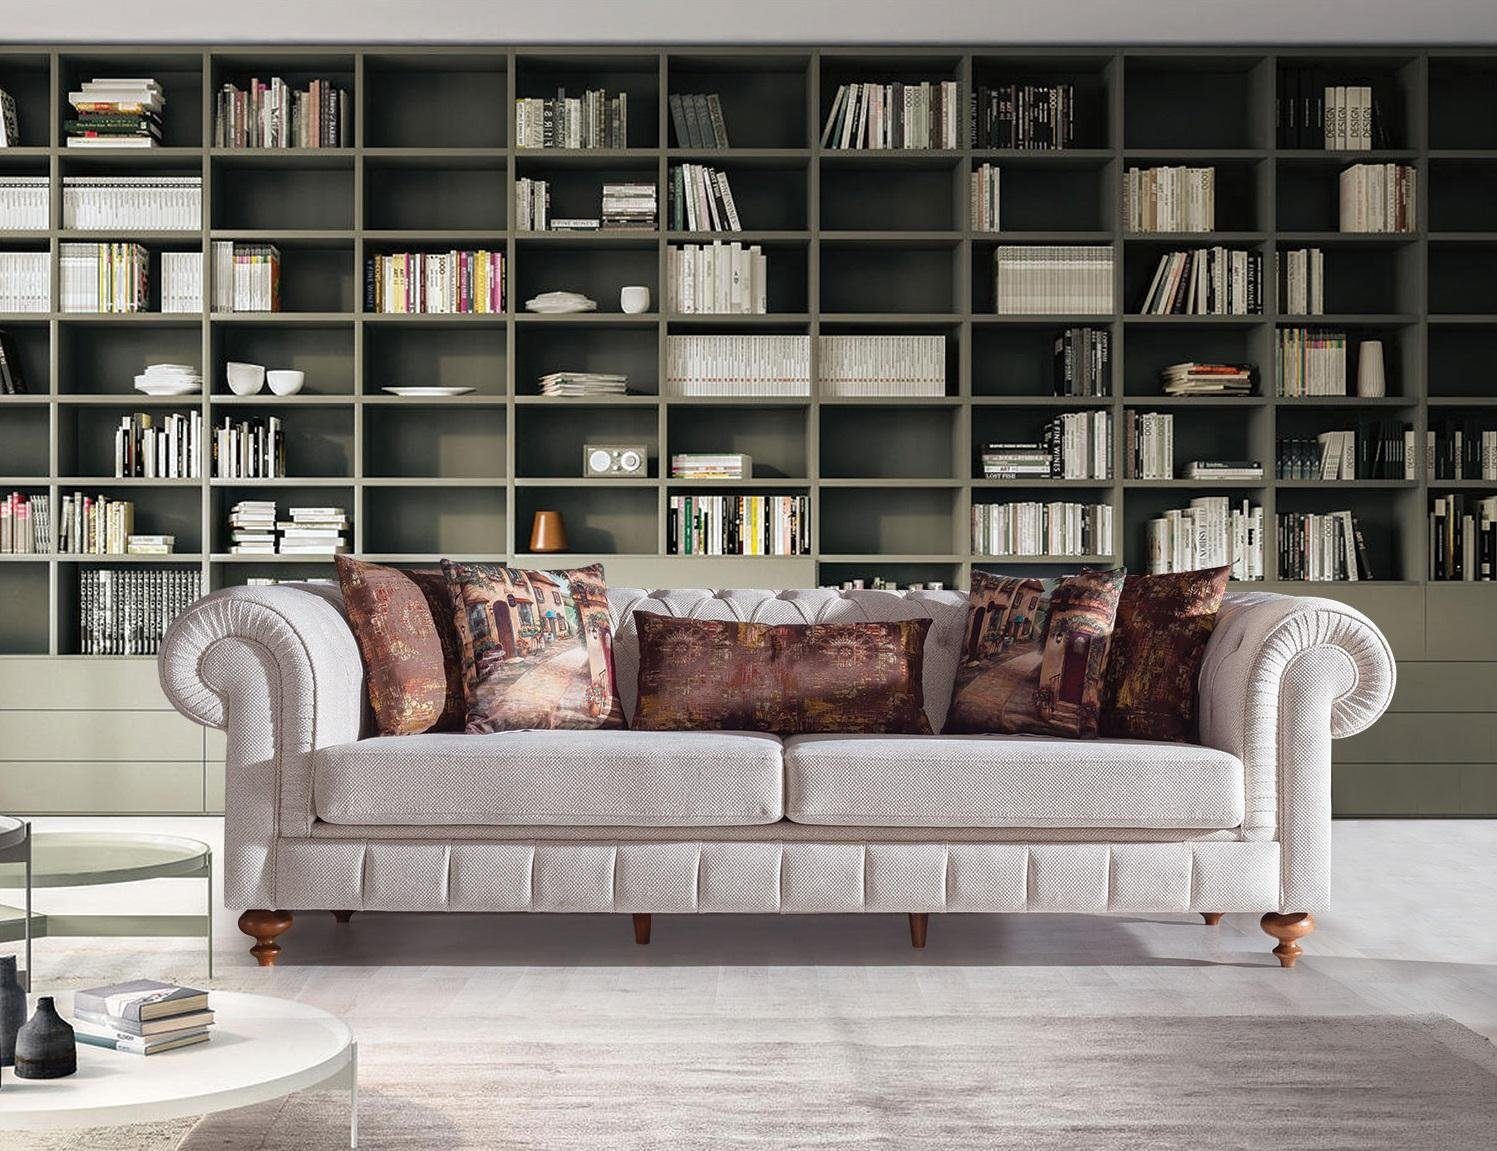 JVmoebel Sofa Grauer Dreisitzer Couch 3-er Sofa Design Möbel Neu, Made in Europe